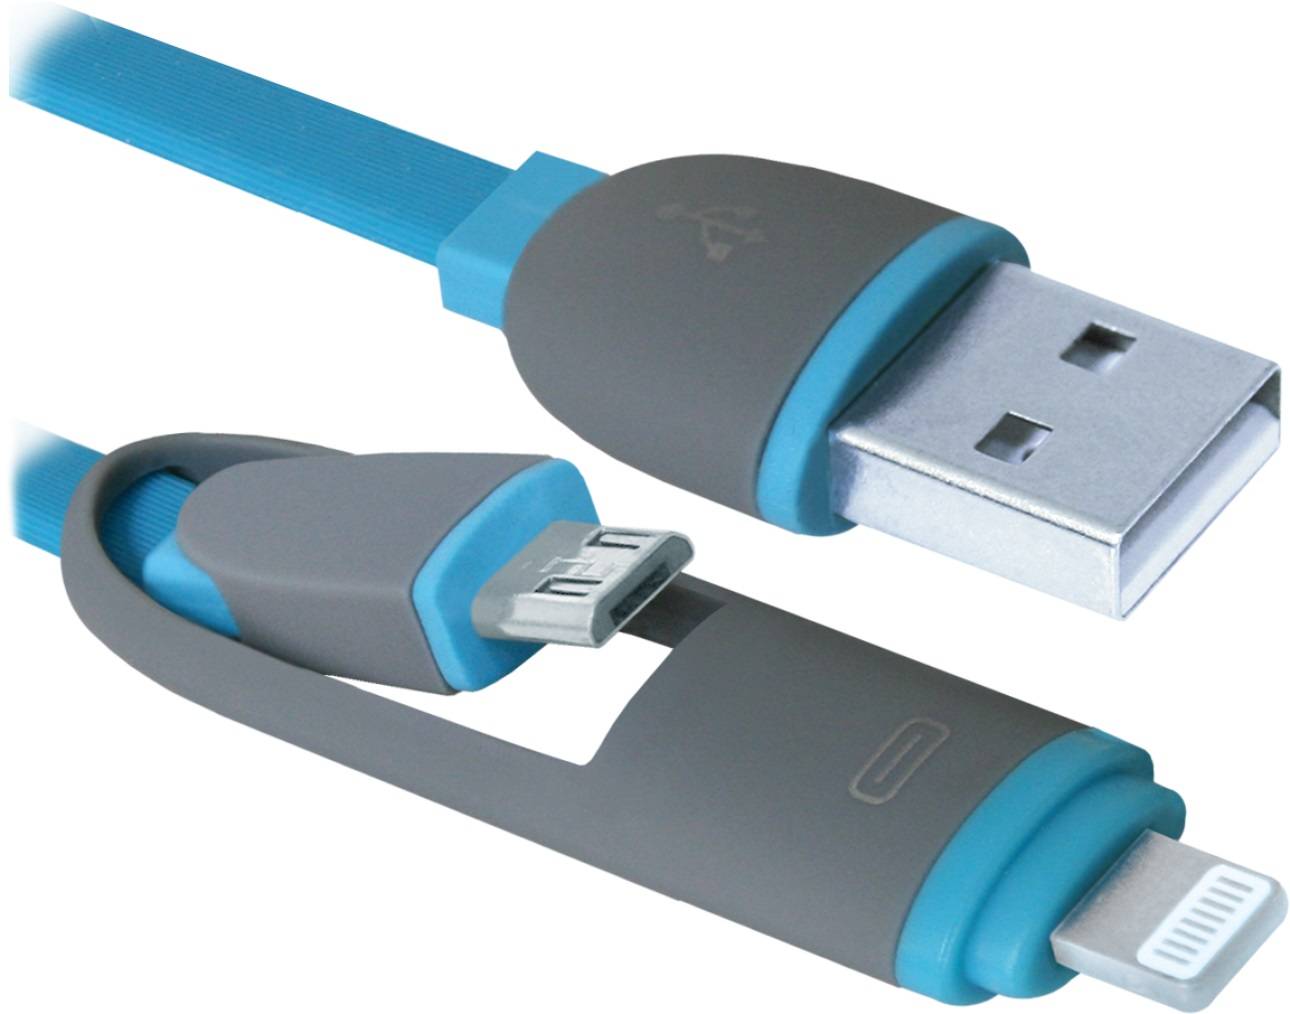 НОВИНКА. USB кабель USB10-03BP синий, MicroUSB + Lightning,1м